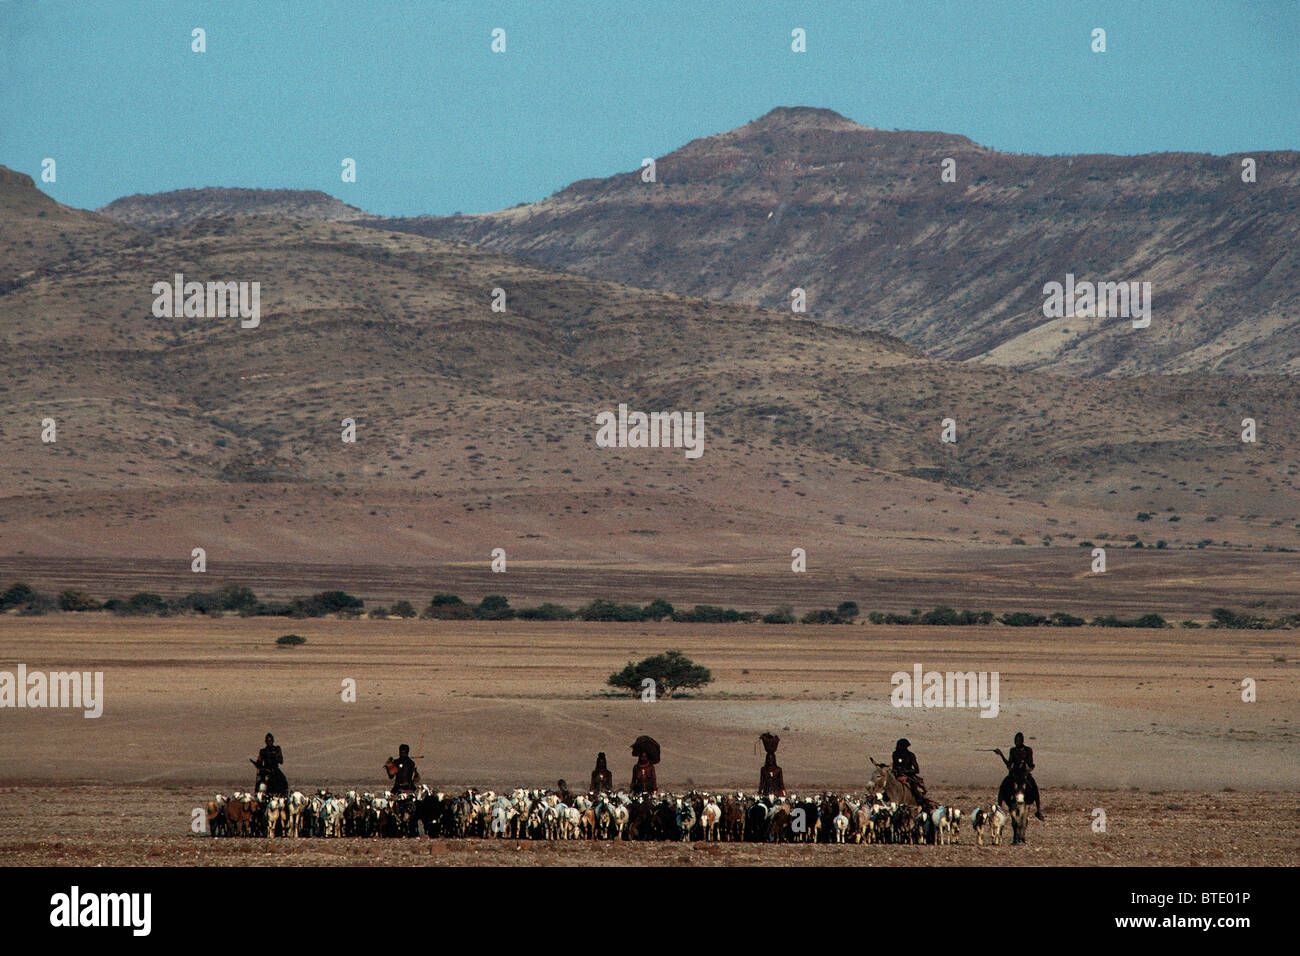 Une vue panoramique de Himba hommes à cheval des troupeaux caprins avec des montagnes en arrière-plan Banque D'Images